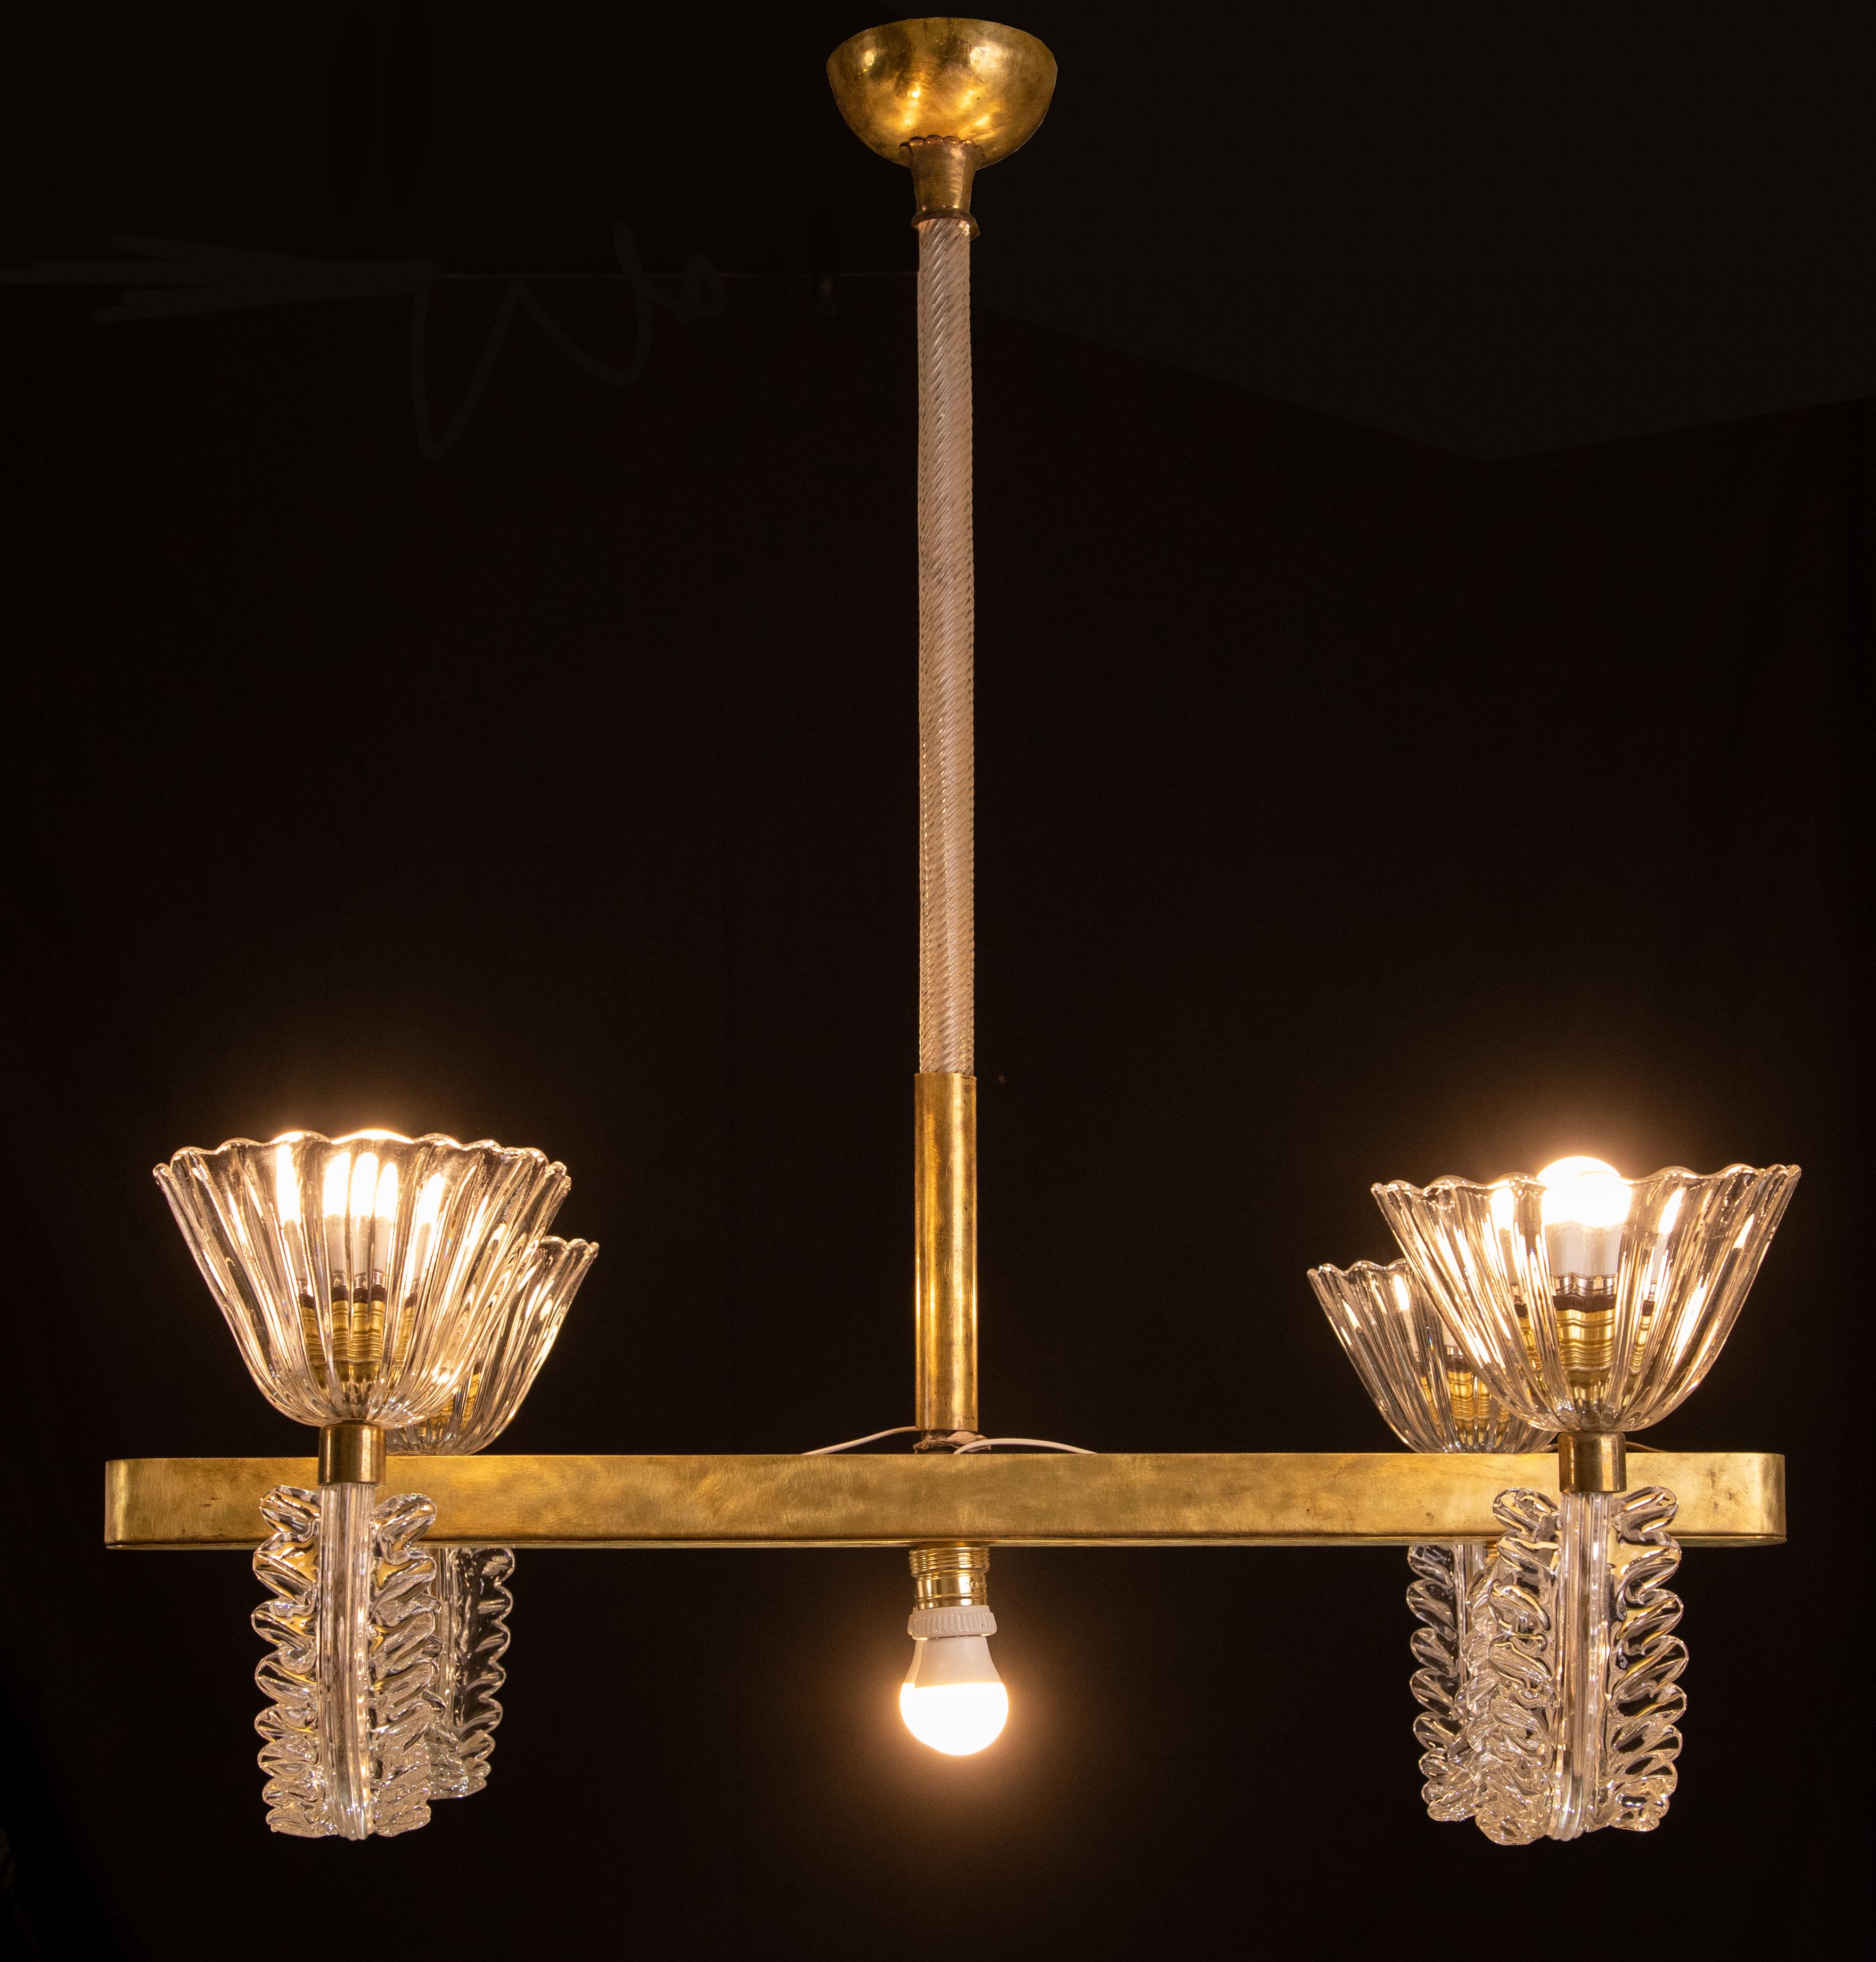 Extraordinaire lustre de Murano provenant des verreries Barovier&Toso.

Période vers 1950.

Le lustre se compose d'un axe central en laiton, entièrement restauré en finition polie, auquel sont attachés 4 bras avec des coupelles.

Deux autres lampes